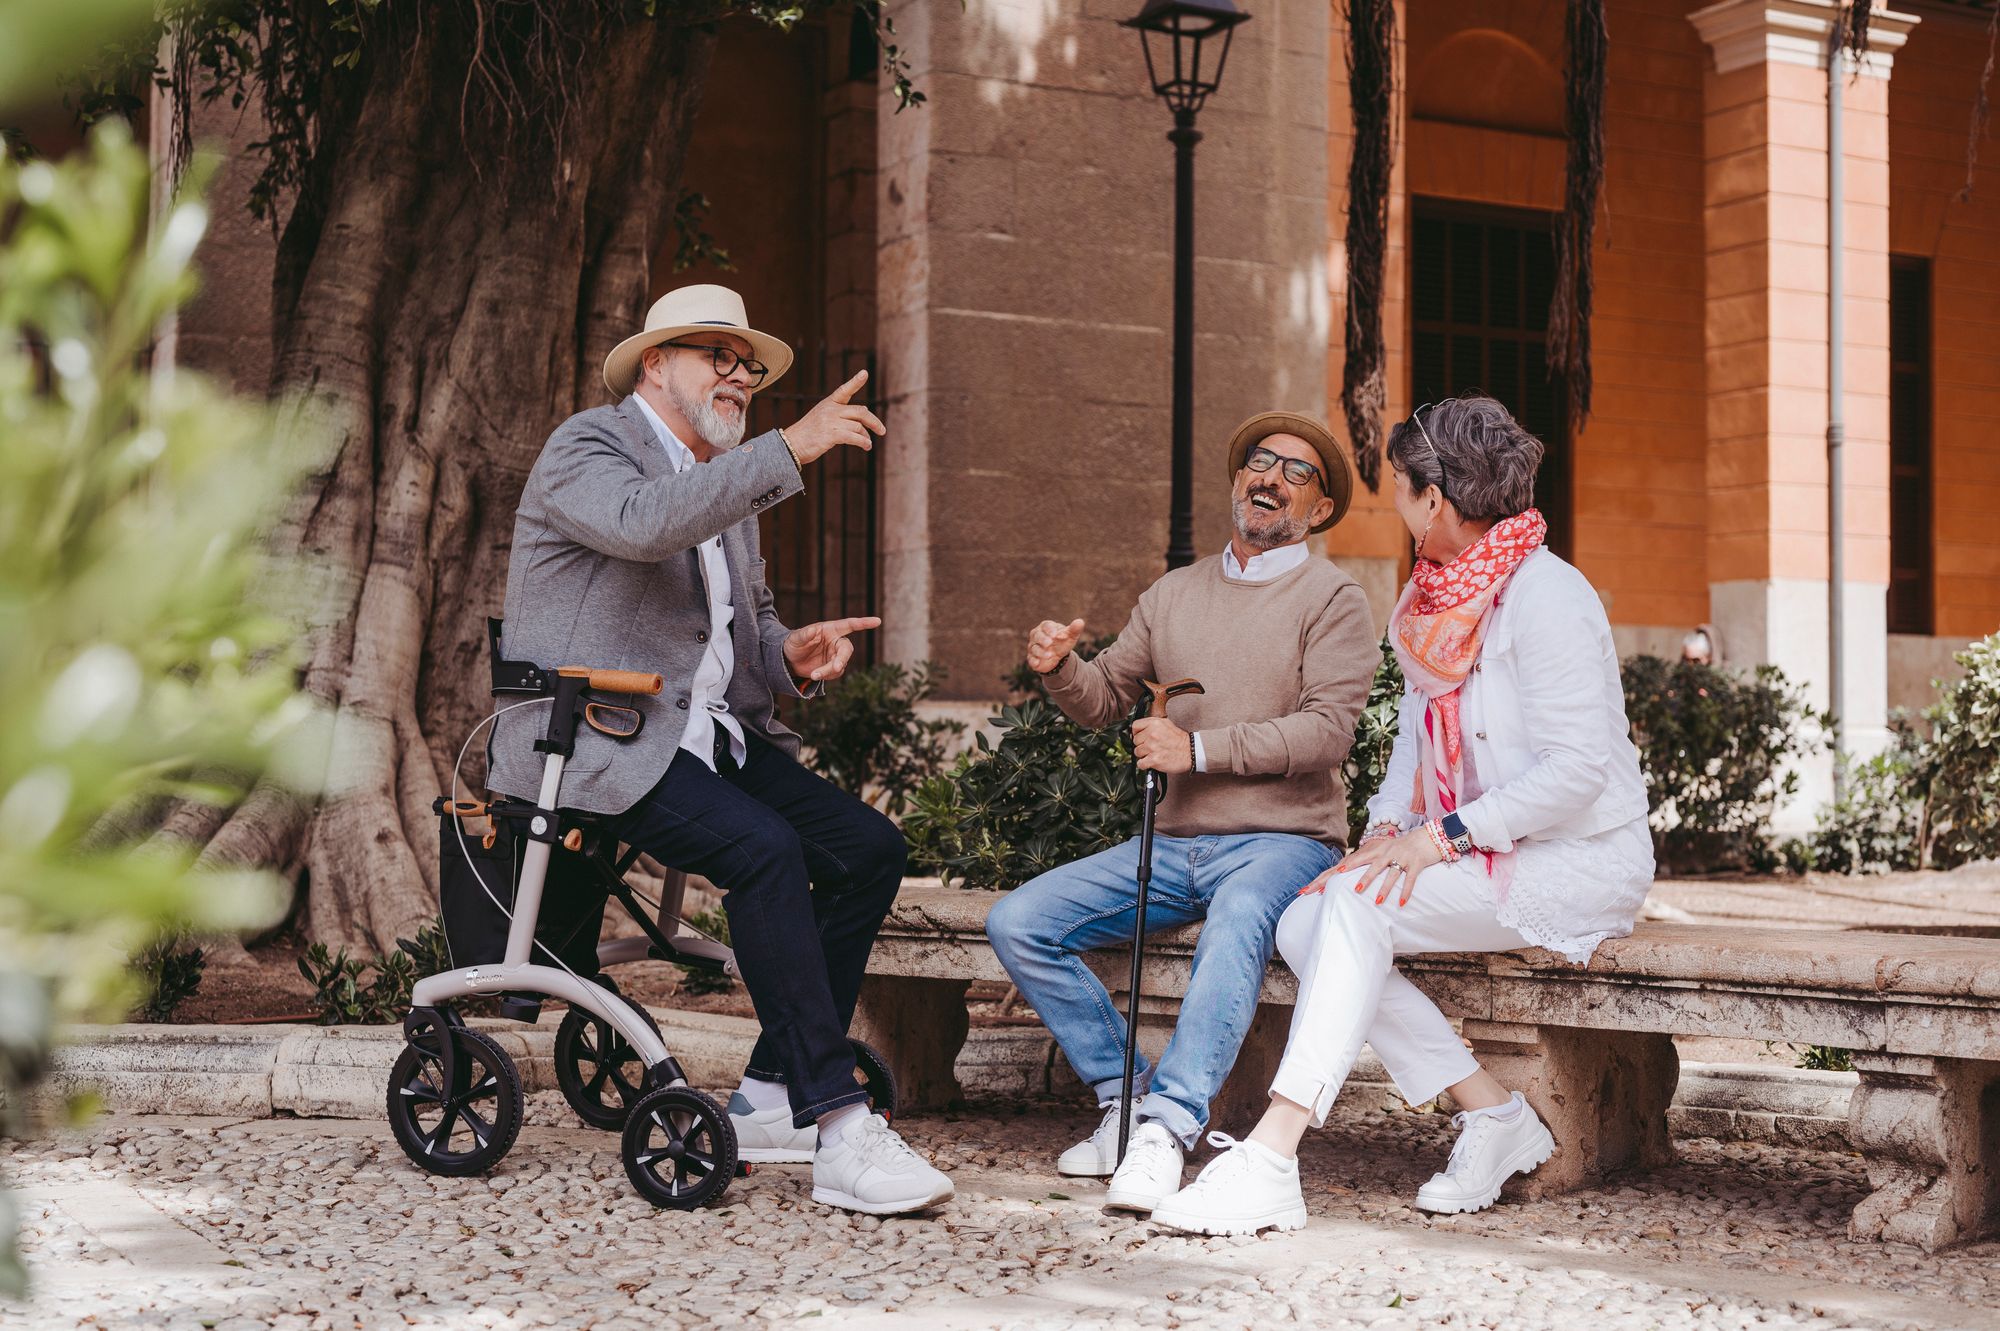 Drei ältere Menschen lachen miteinander auf einer Parkbank. Ein älterer Herr sitzt auf einem Rollator.